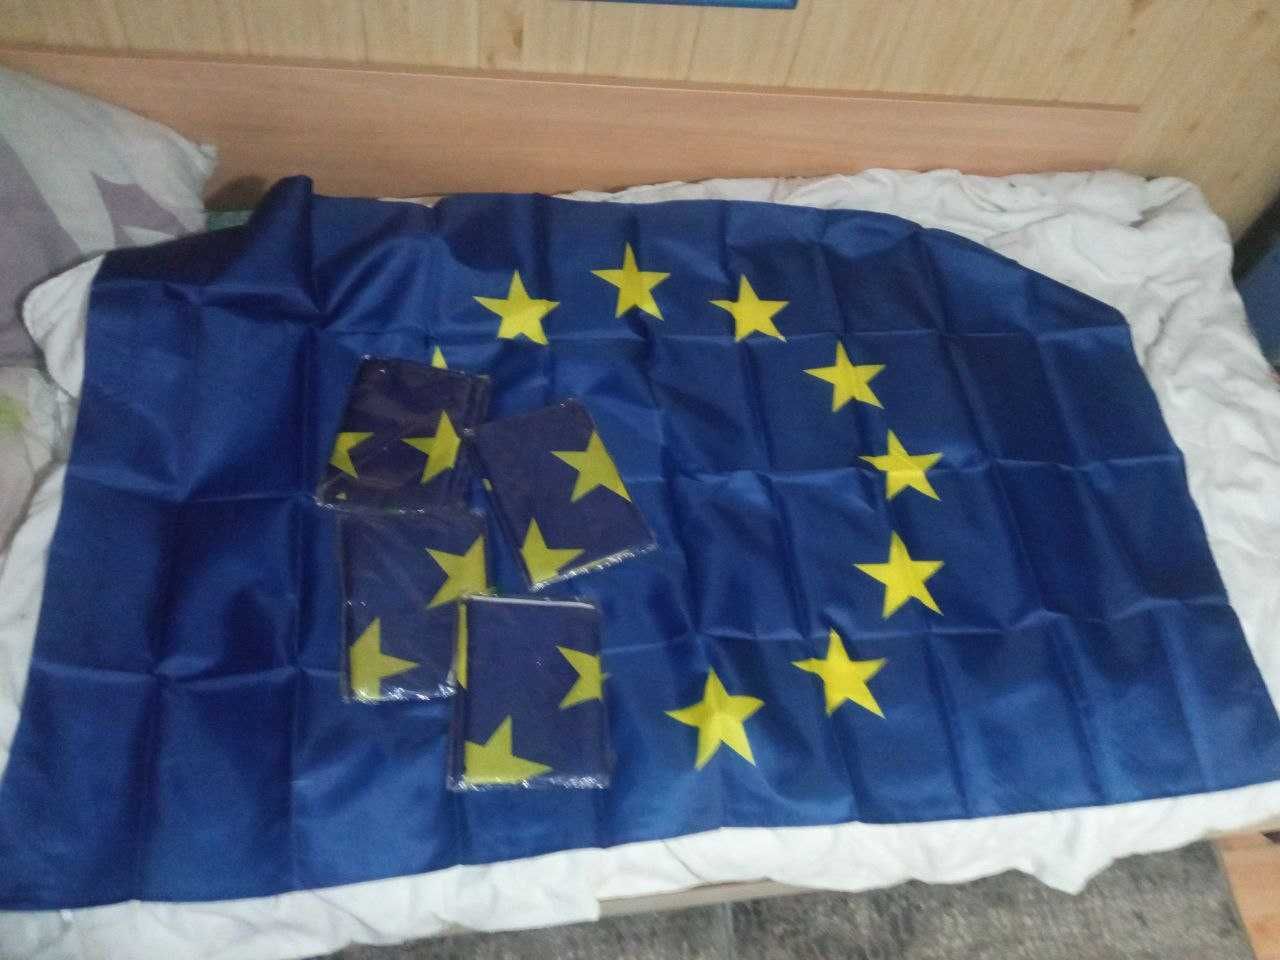 Продам прапор евросоюзу 140см на 90см шелк.